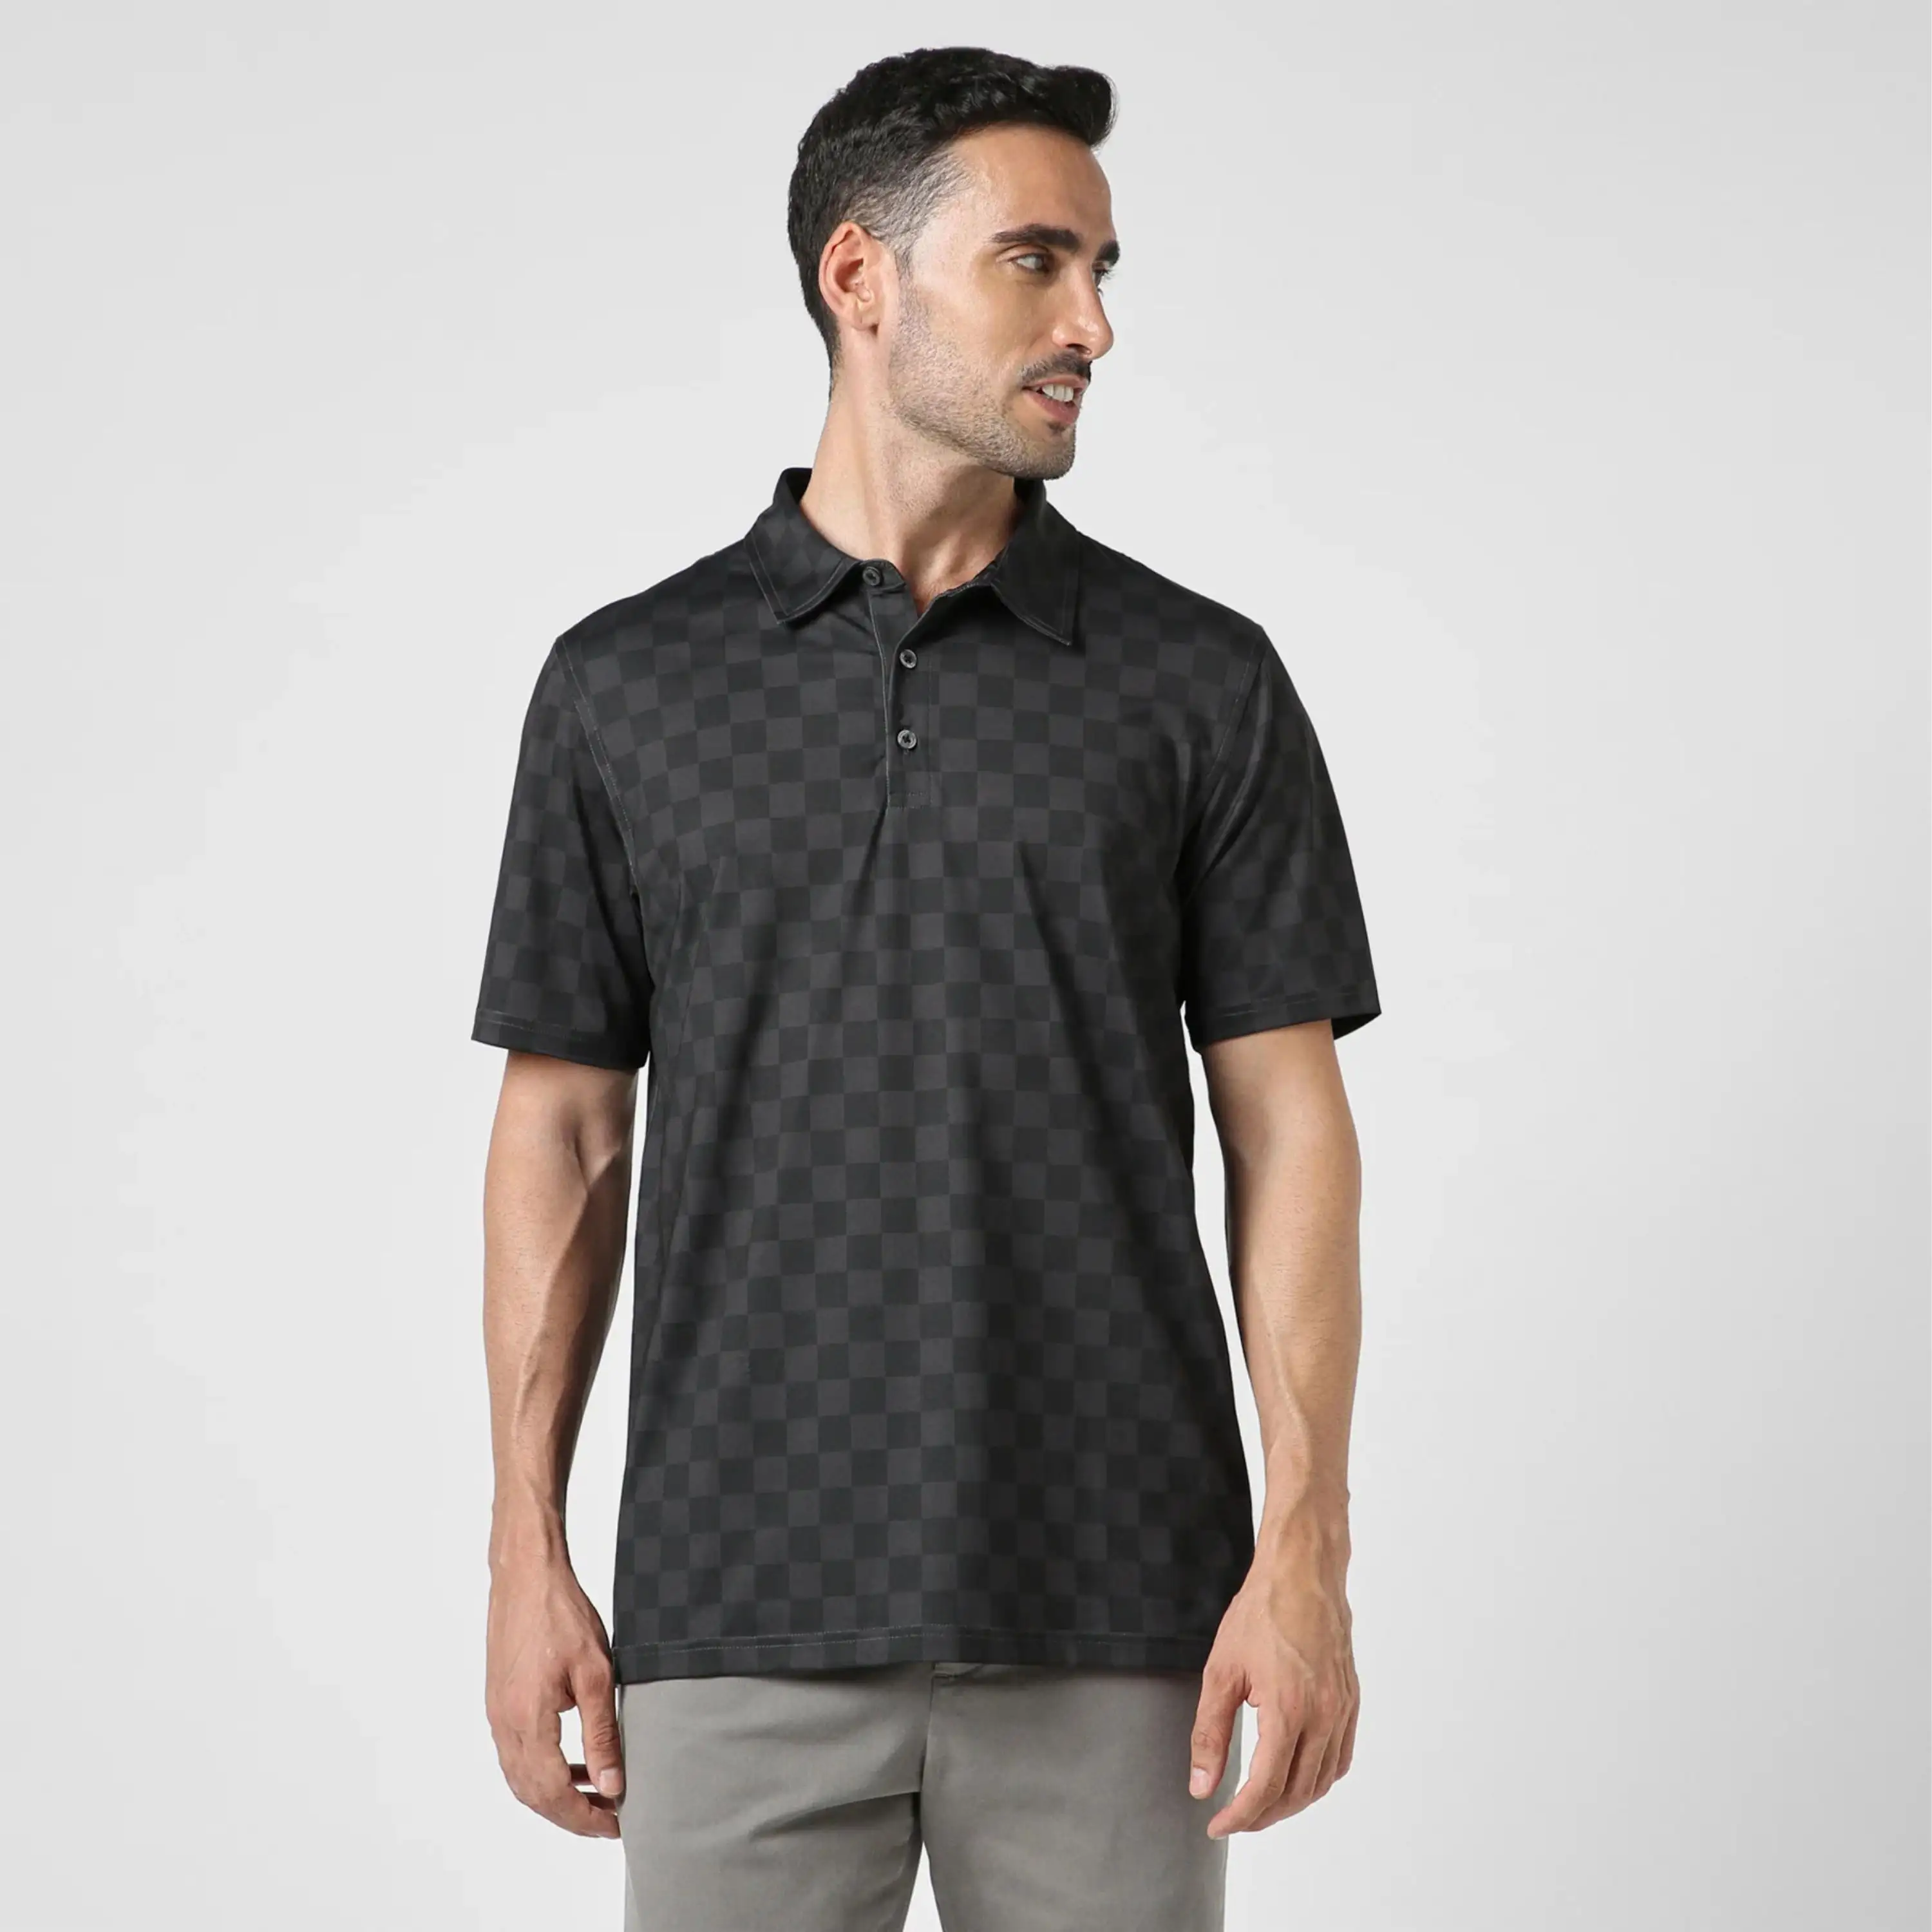 Мужская Высокоэффективная рубашка поло для гольфа-Влагоотводящая и быстросохнущая ткань, идеально подходит для спортивной и повседневной одежды